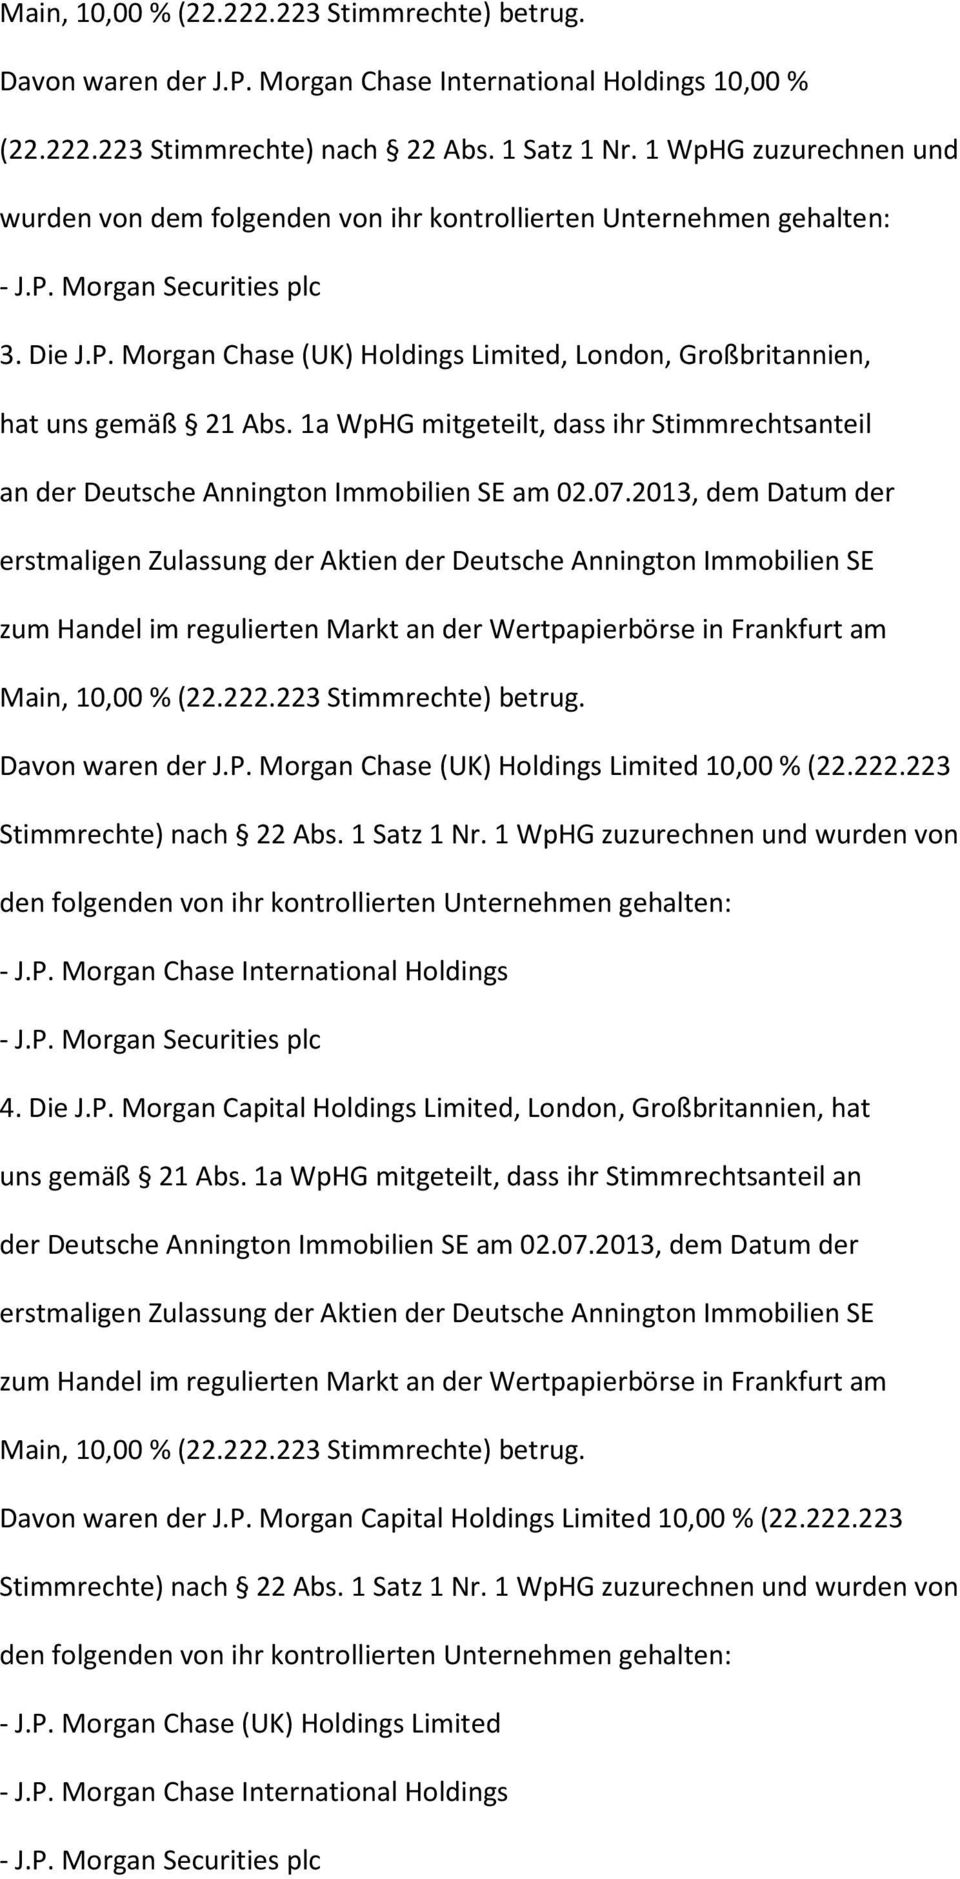 Morgan Chase (UK) Holdings Limited 10,00 %(22.222.223 Stimmrechte) nach 22 Abs. 1 Satz 1 Nr. 1 WpHG zuzurechnen und wurden von den folgenden von ihr kontrollierten Unternehmen gehalten: 4. Die J.P.